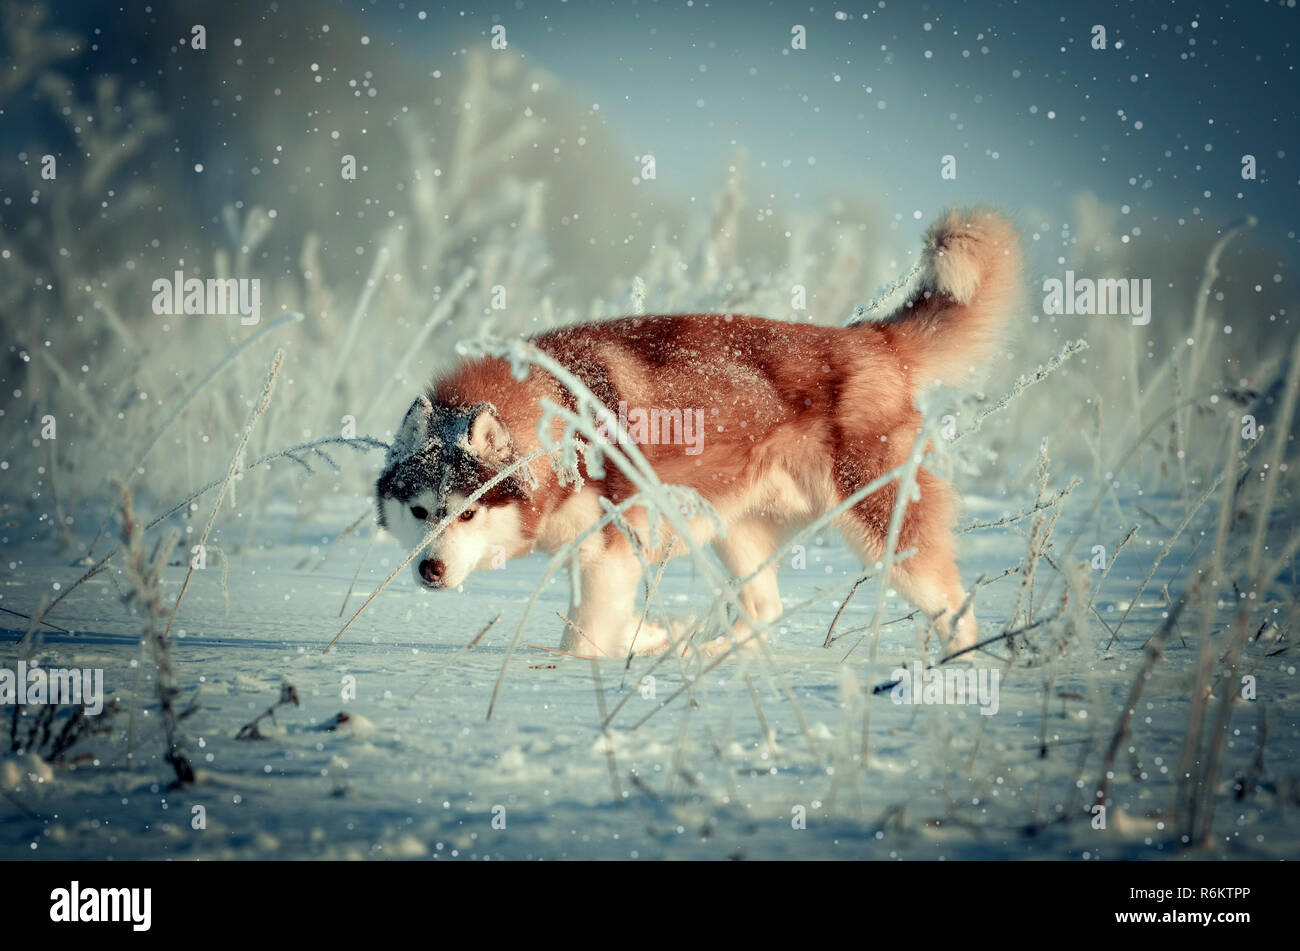 Rot sibirischer Husky reinrassigen Hund im Winter schneit Outdoor getonten Bild Stockfoto